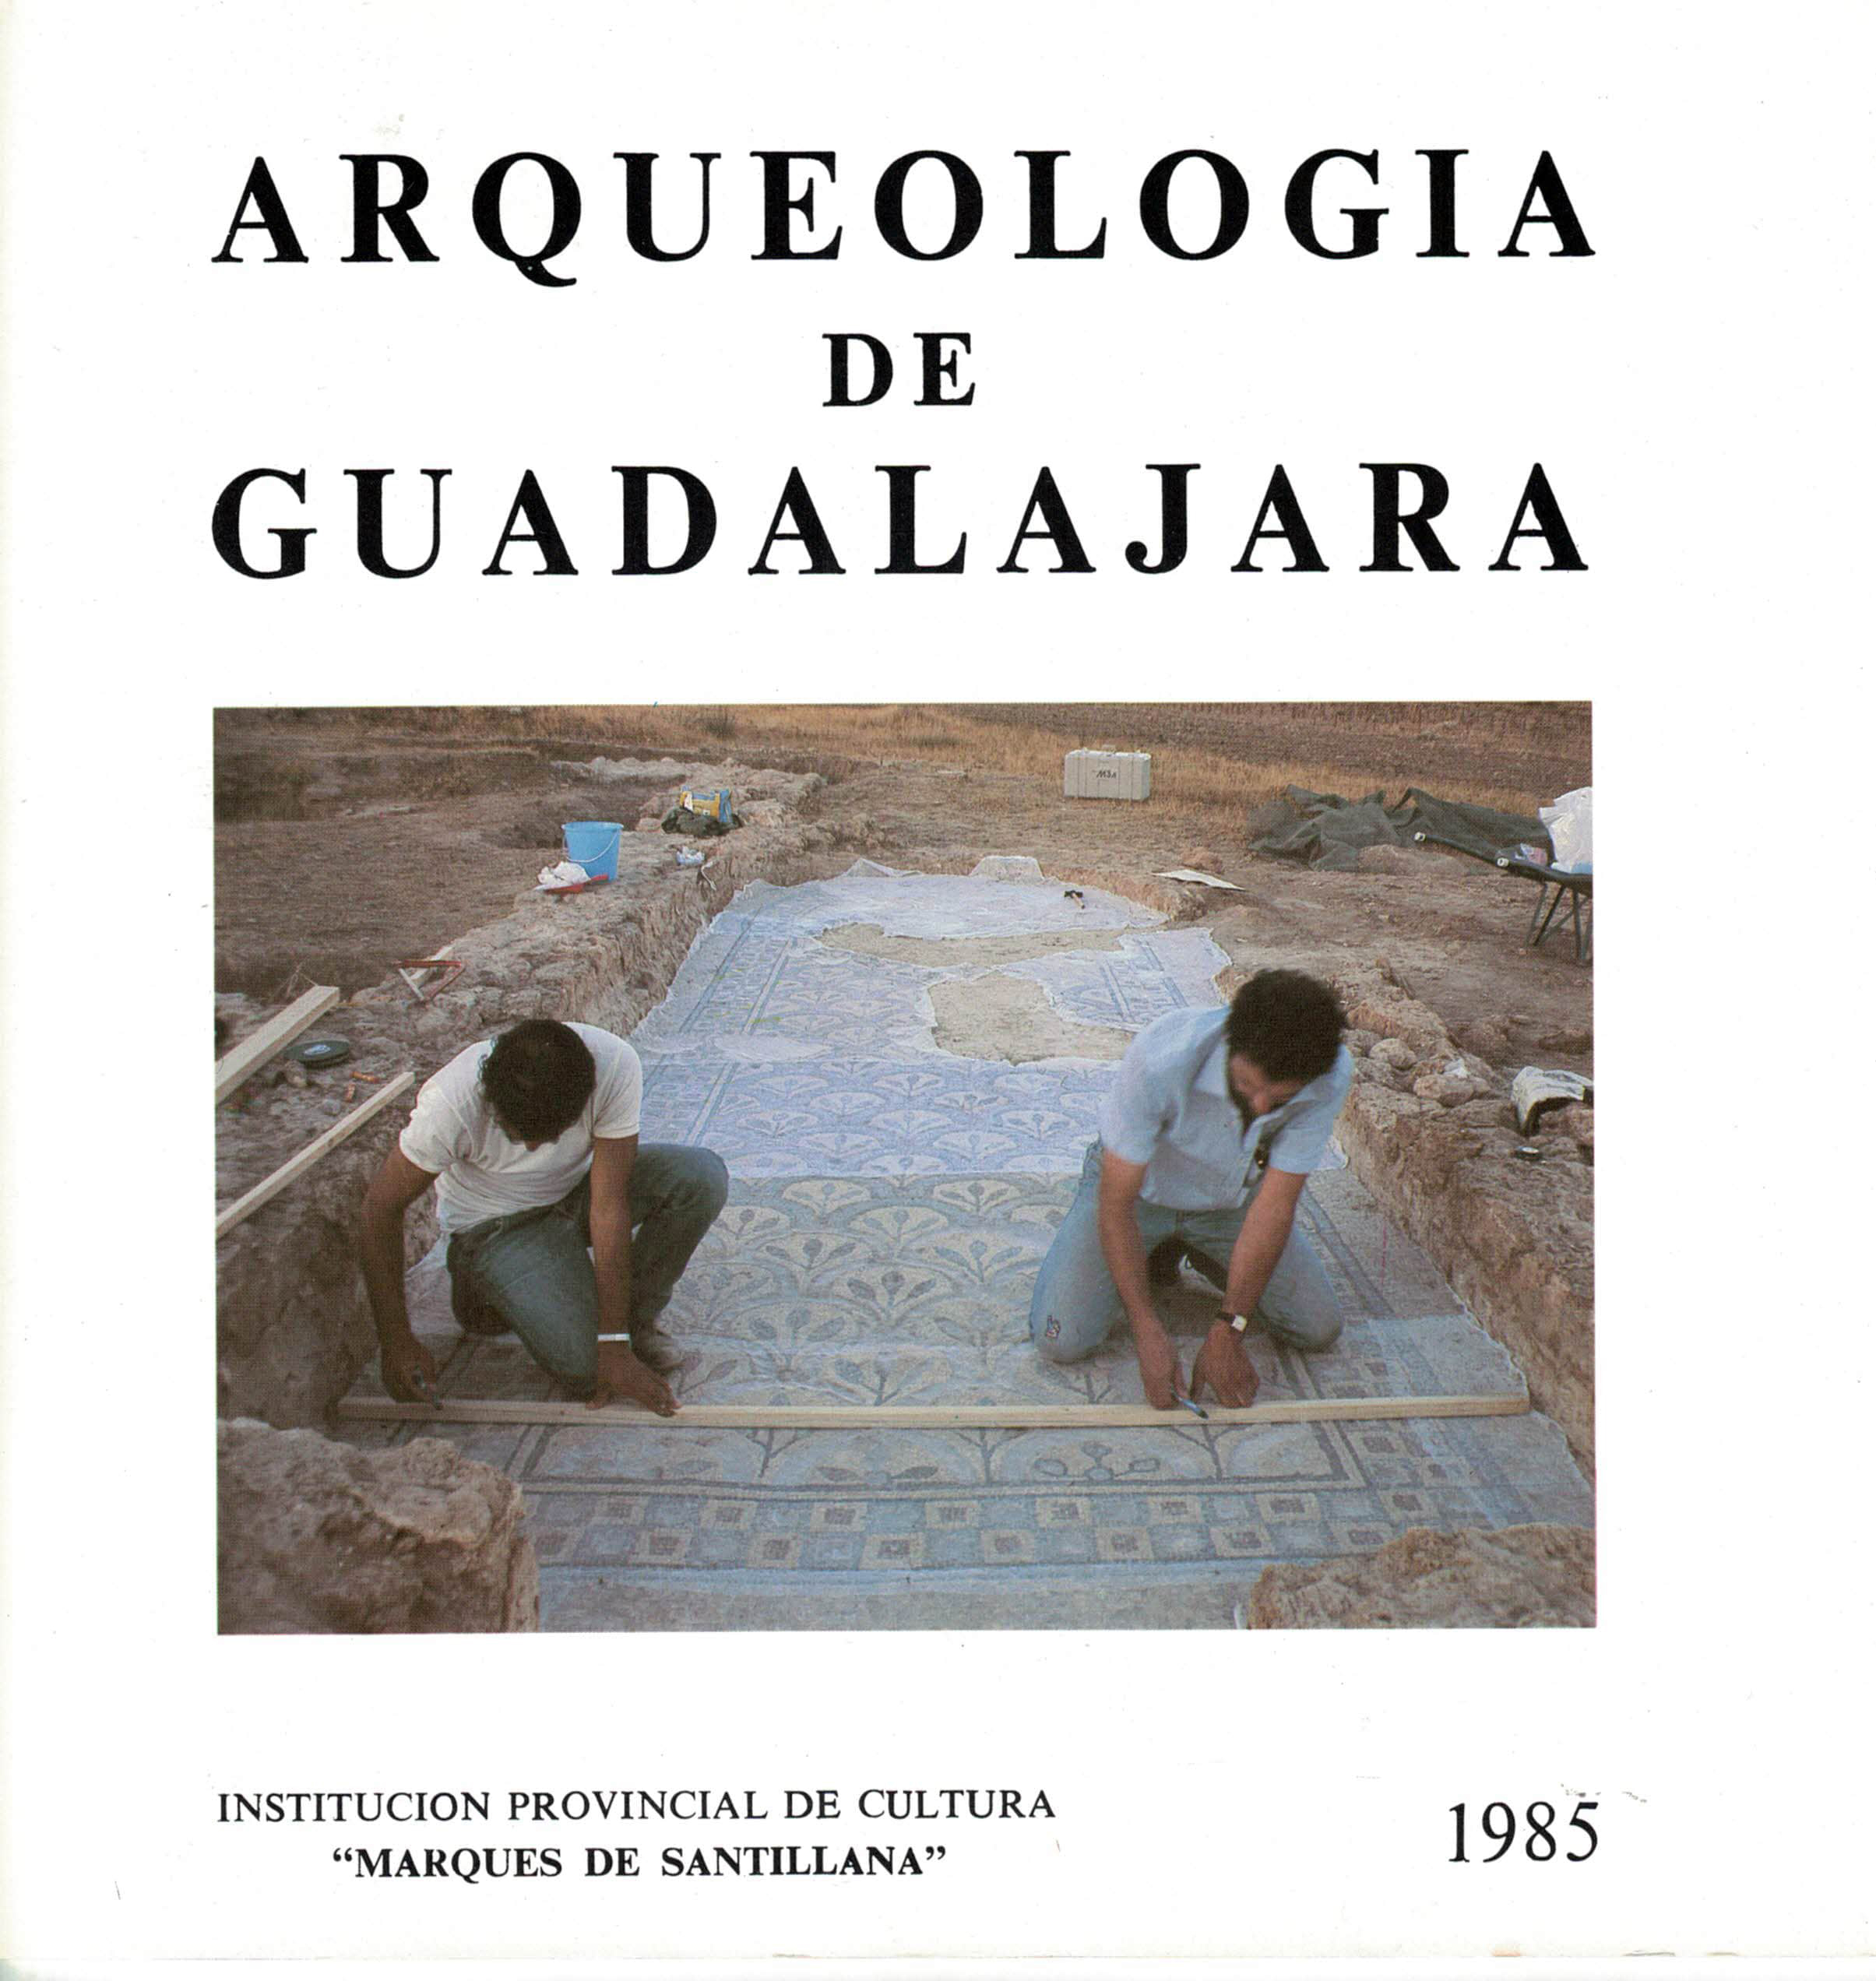 Arqueologia de Guadalajara, Institución provincial de cultura Marqués de Santillana